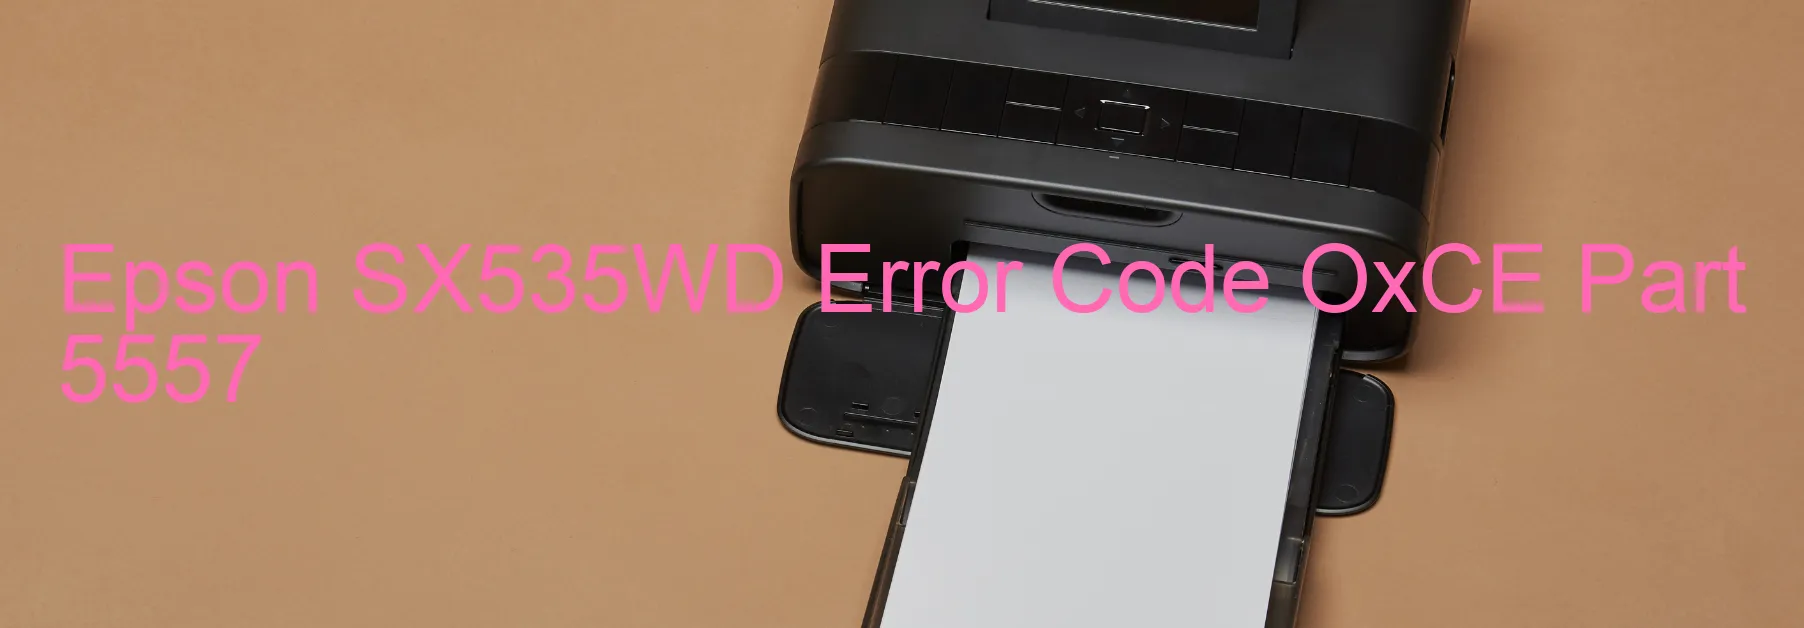 Epson SX535WD Error Code OxCE Part 5557